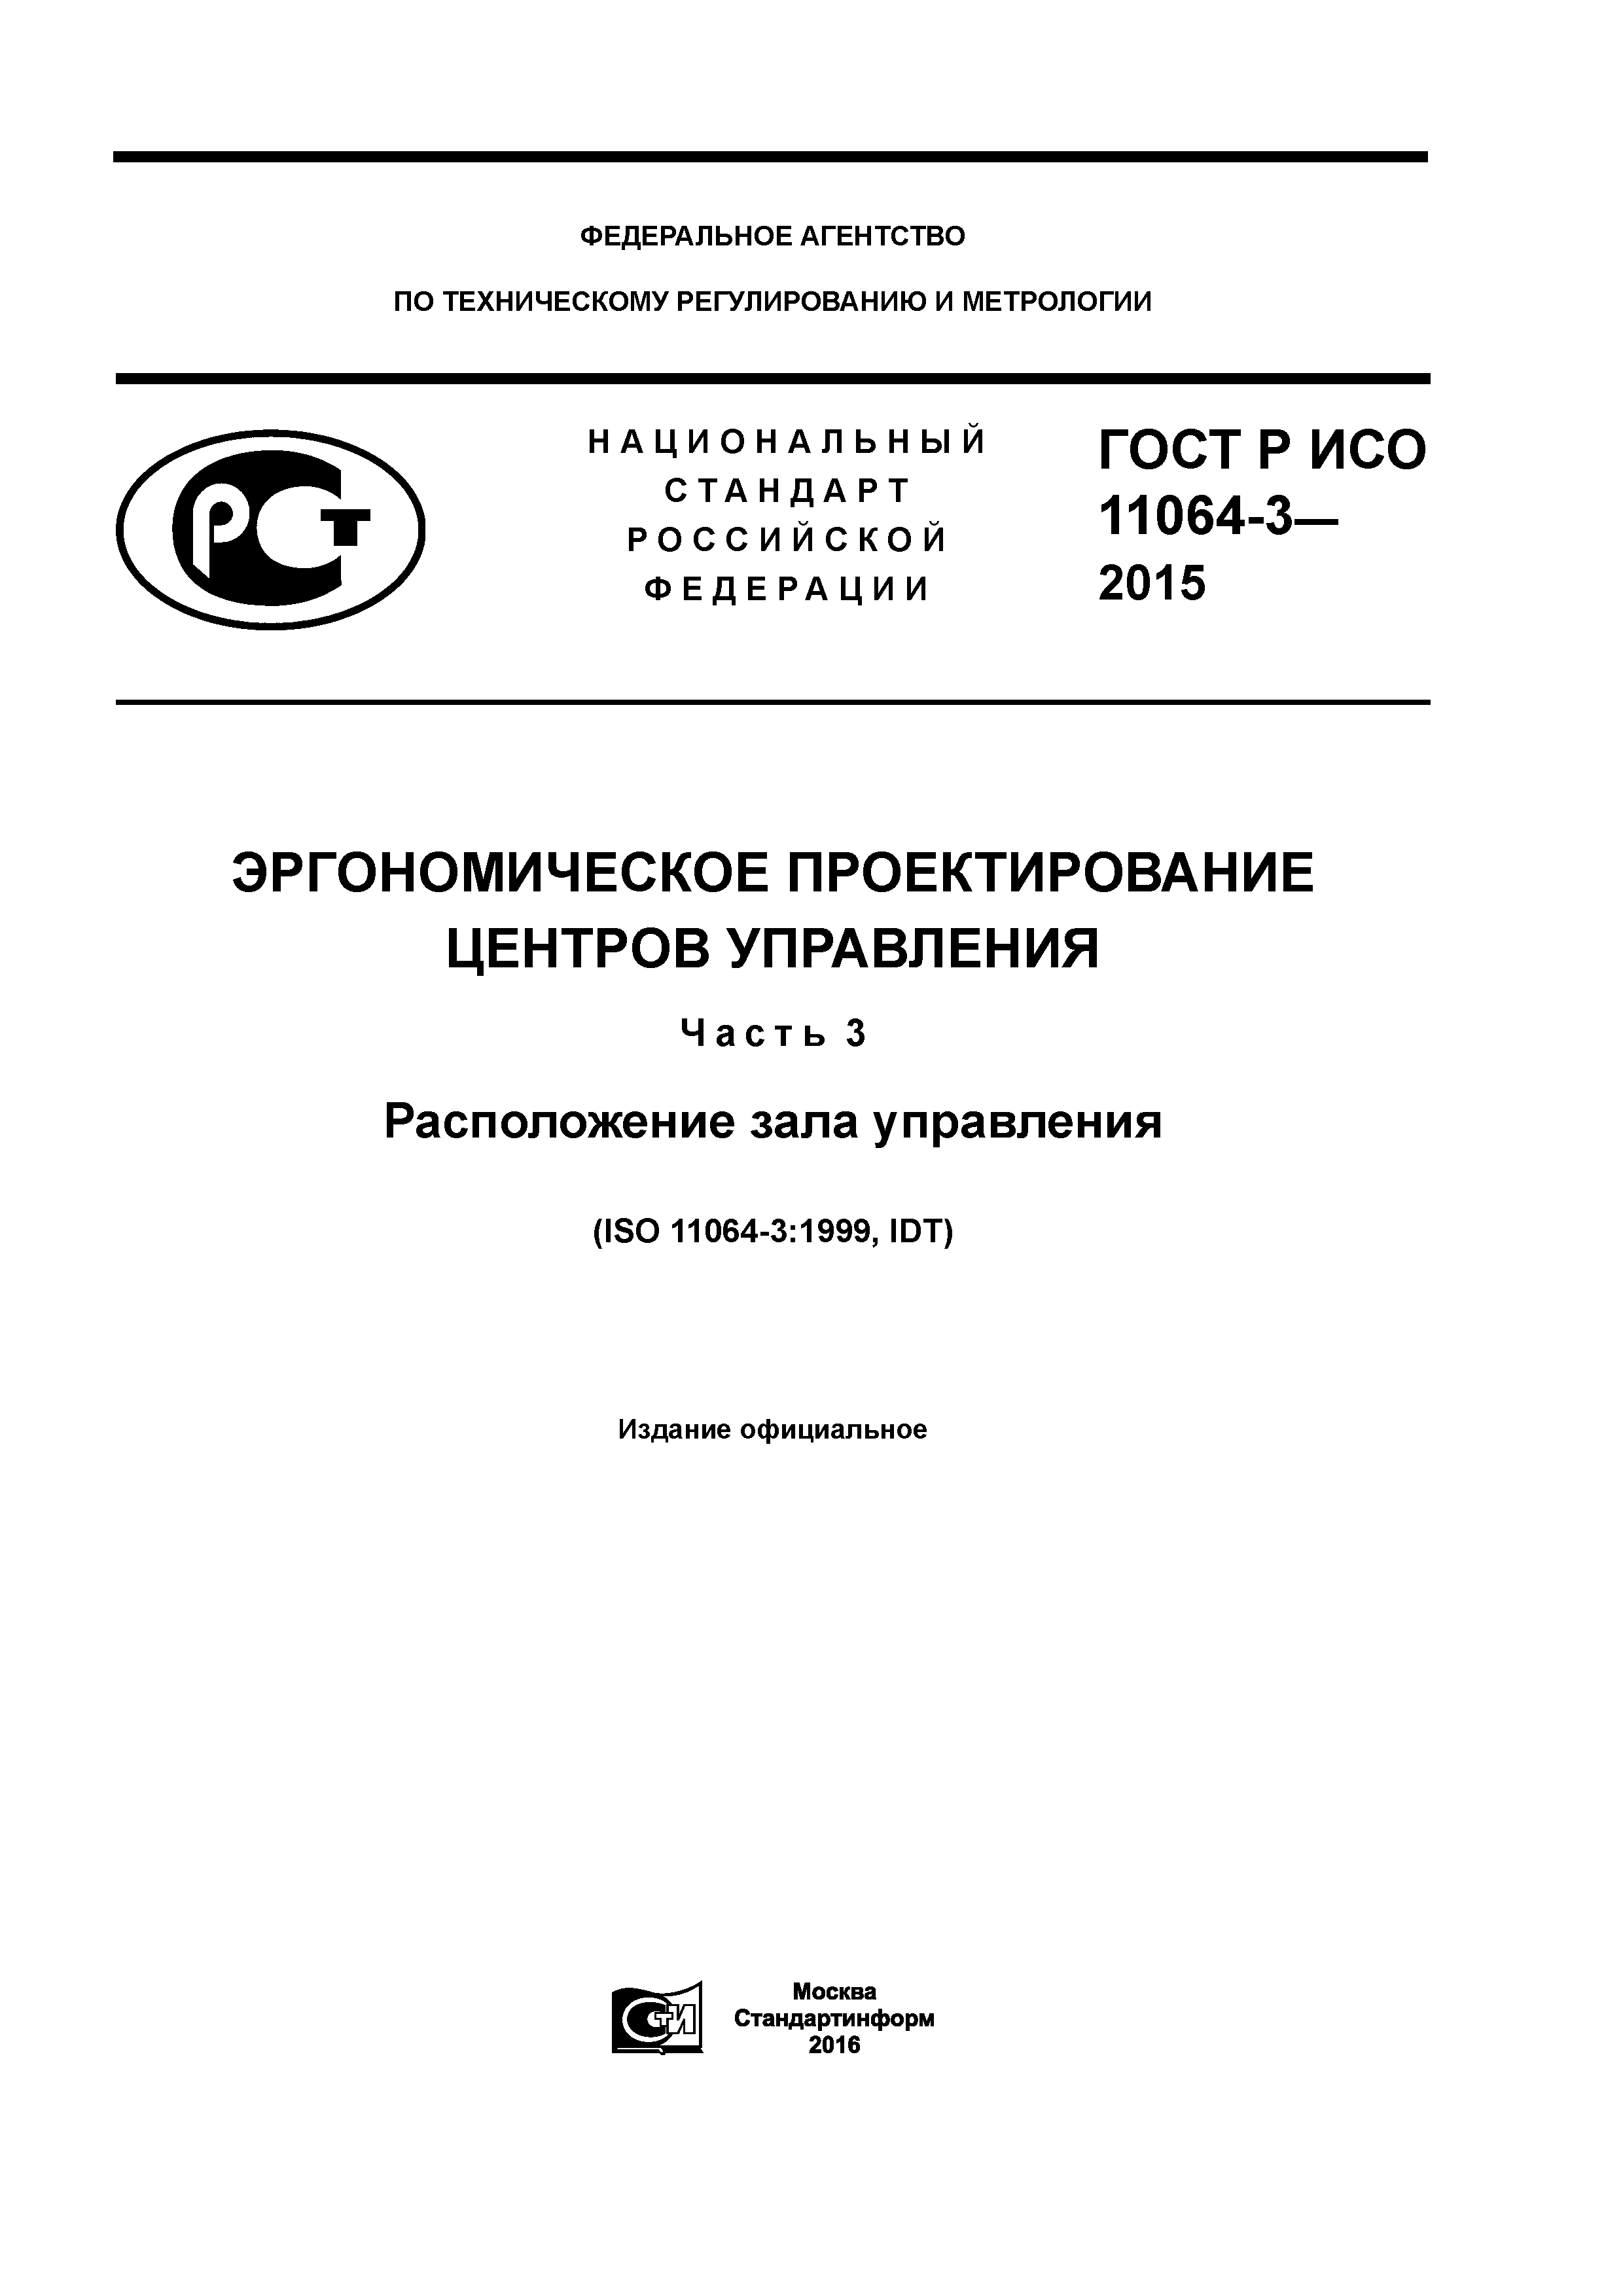 ГОСТ Р ИСО 11064-3-2015